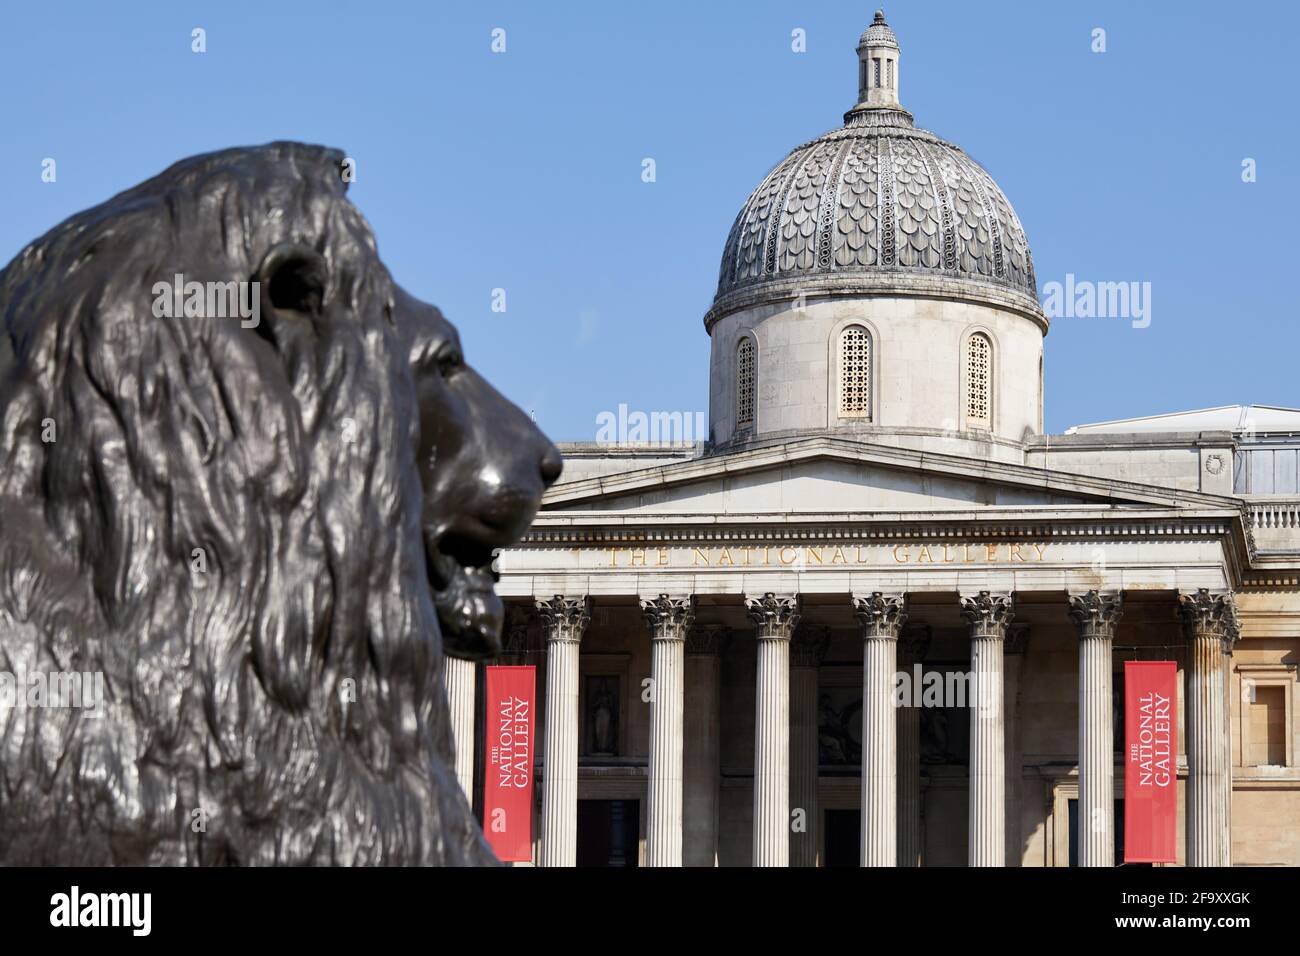 London, Großbritannien - 20. Apr 2021: Fassade des National Gallery Art Museums auf dem Trafalgar Square, abgebildet hinter einem der Bronzelöwen, aus denen die Gegend besteht. Stockfoto